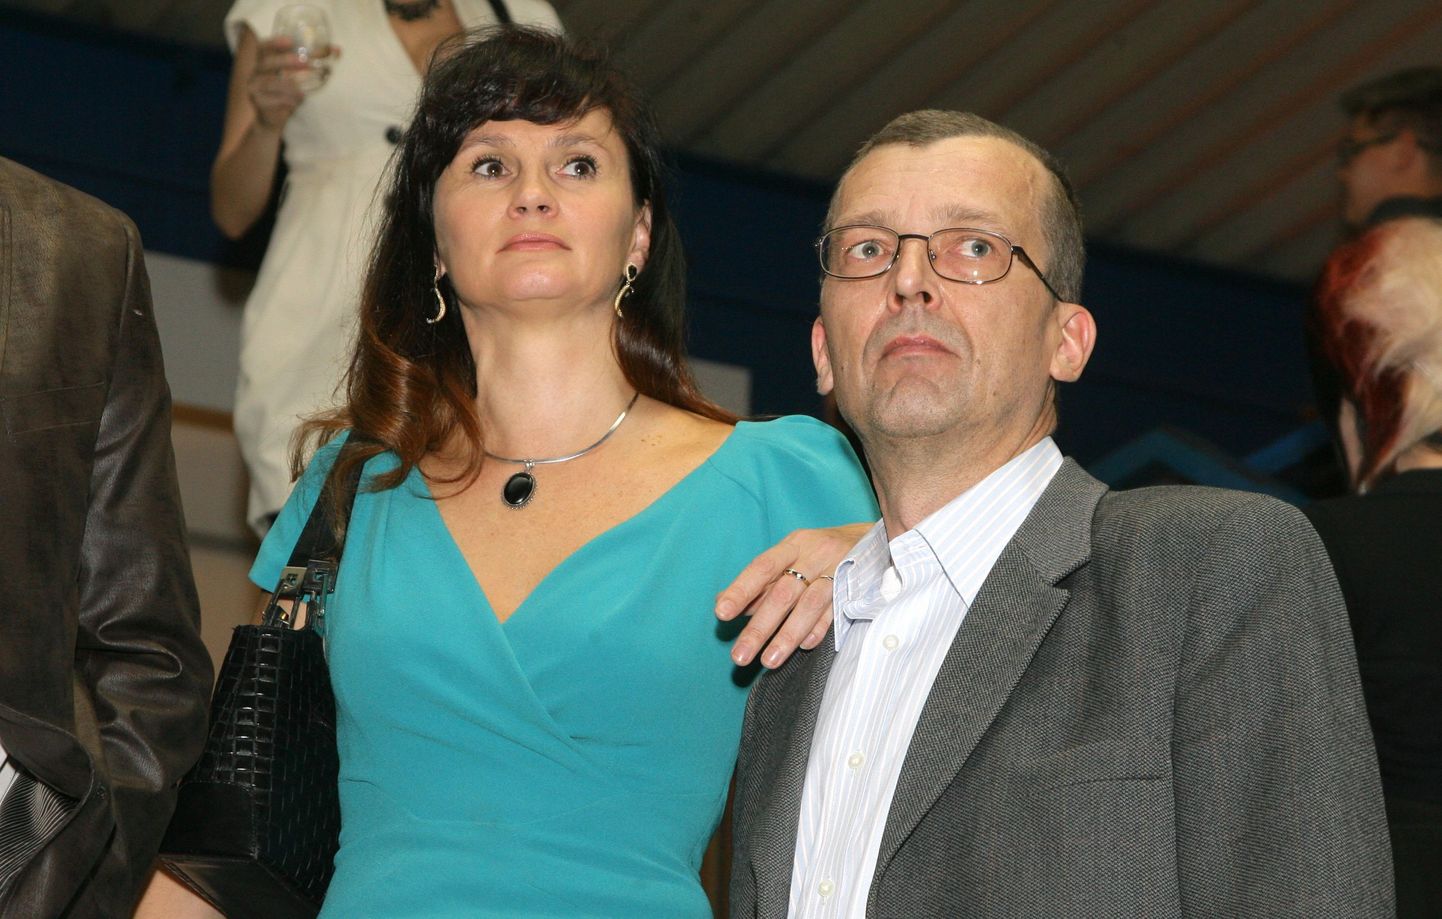 Кристель Мейер со своим спутником жизни Хейки Кранихом на празднике Kanal2 в 2013 году.